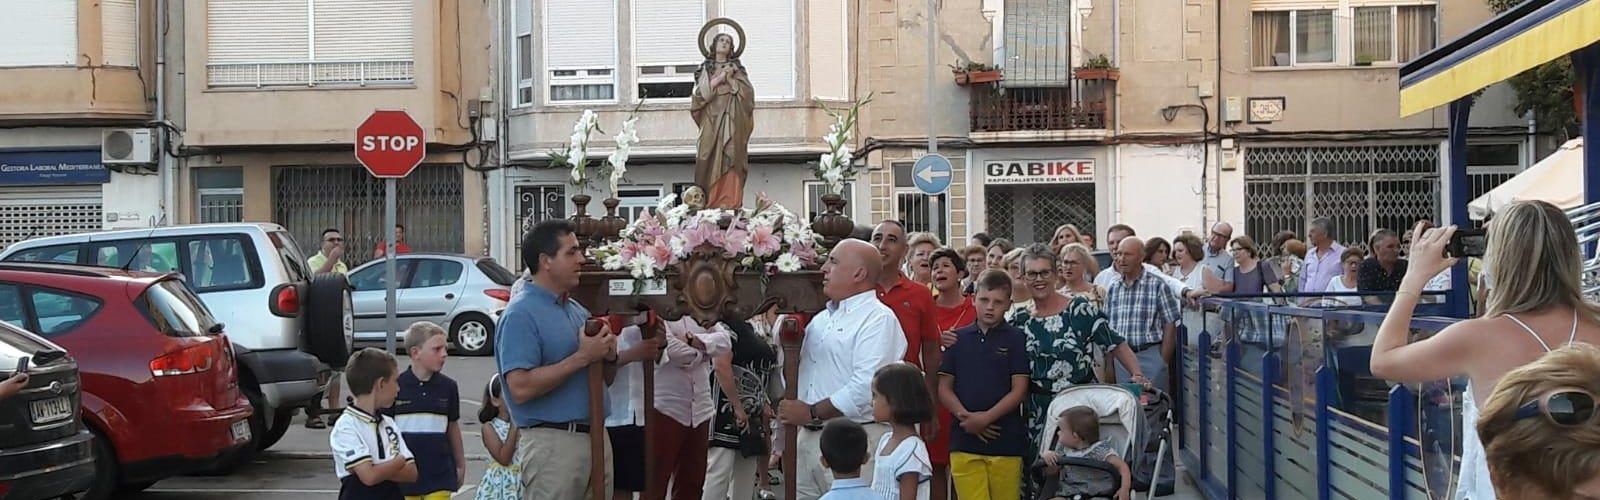 La parròquia Santa Magdalena celebrà la seua festa